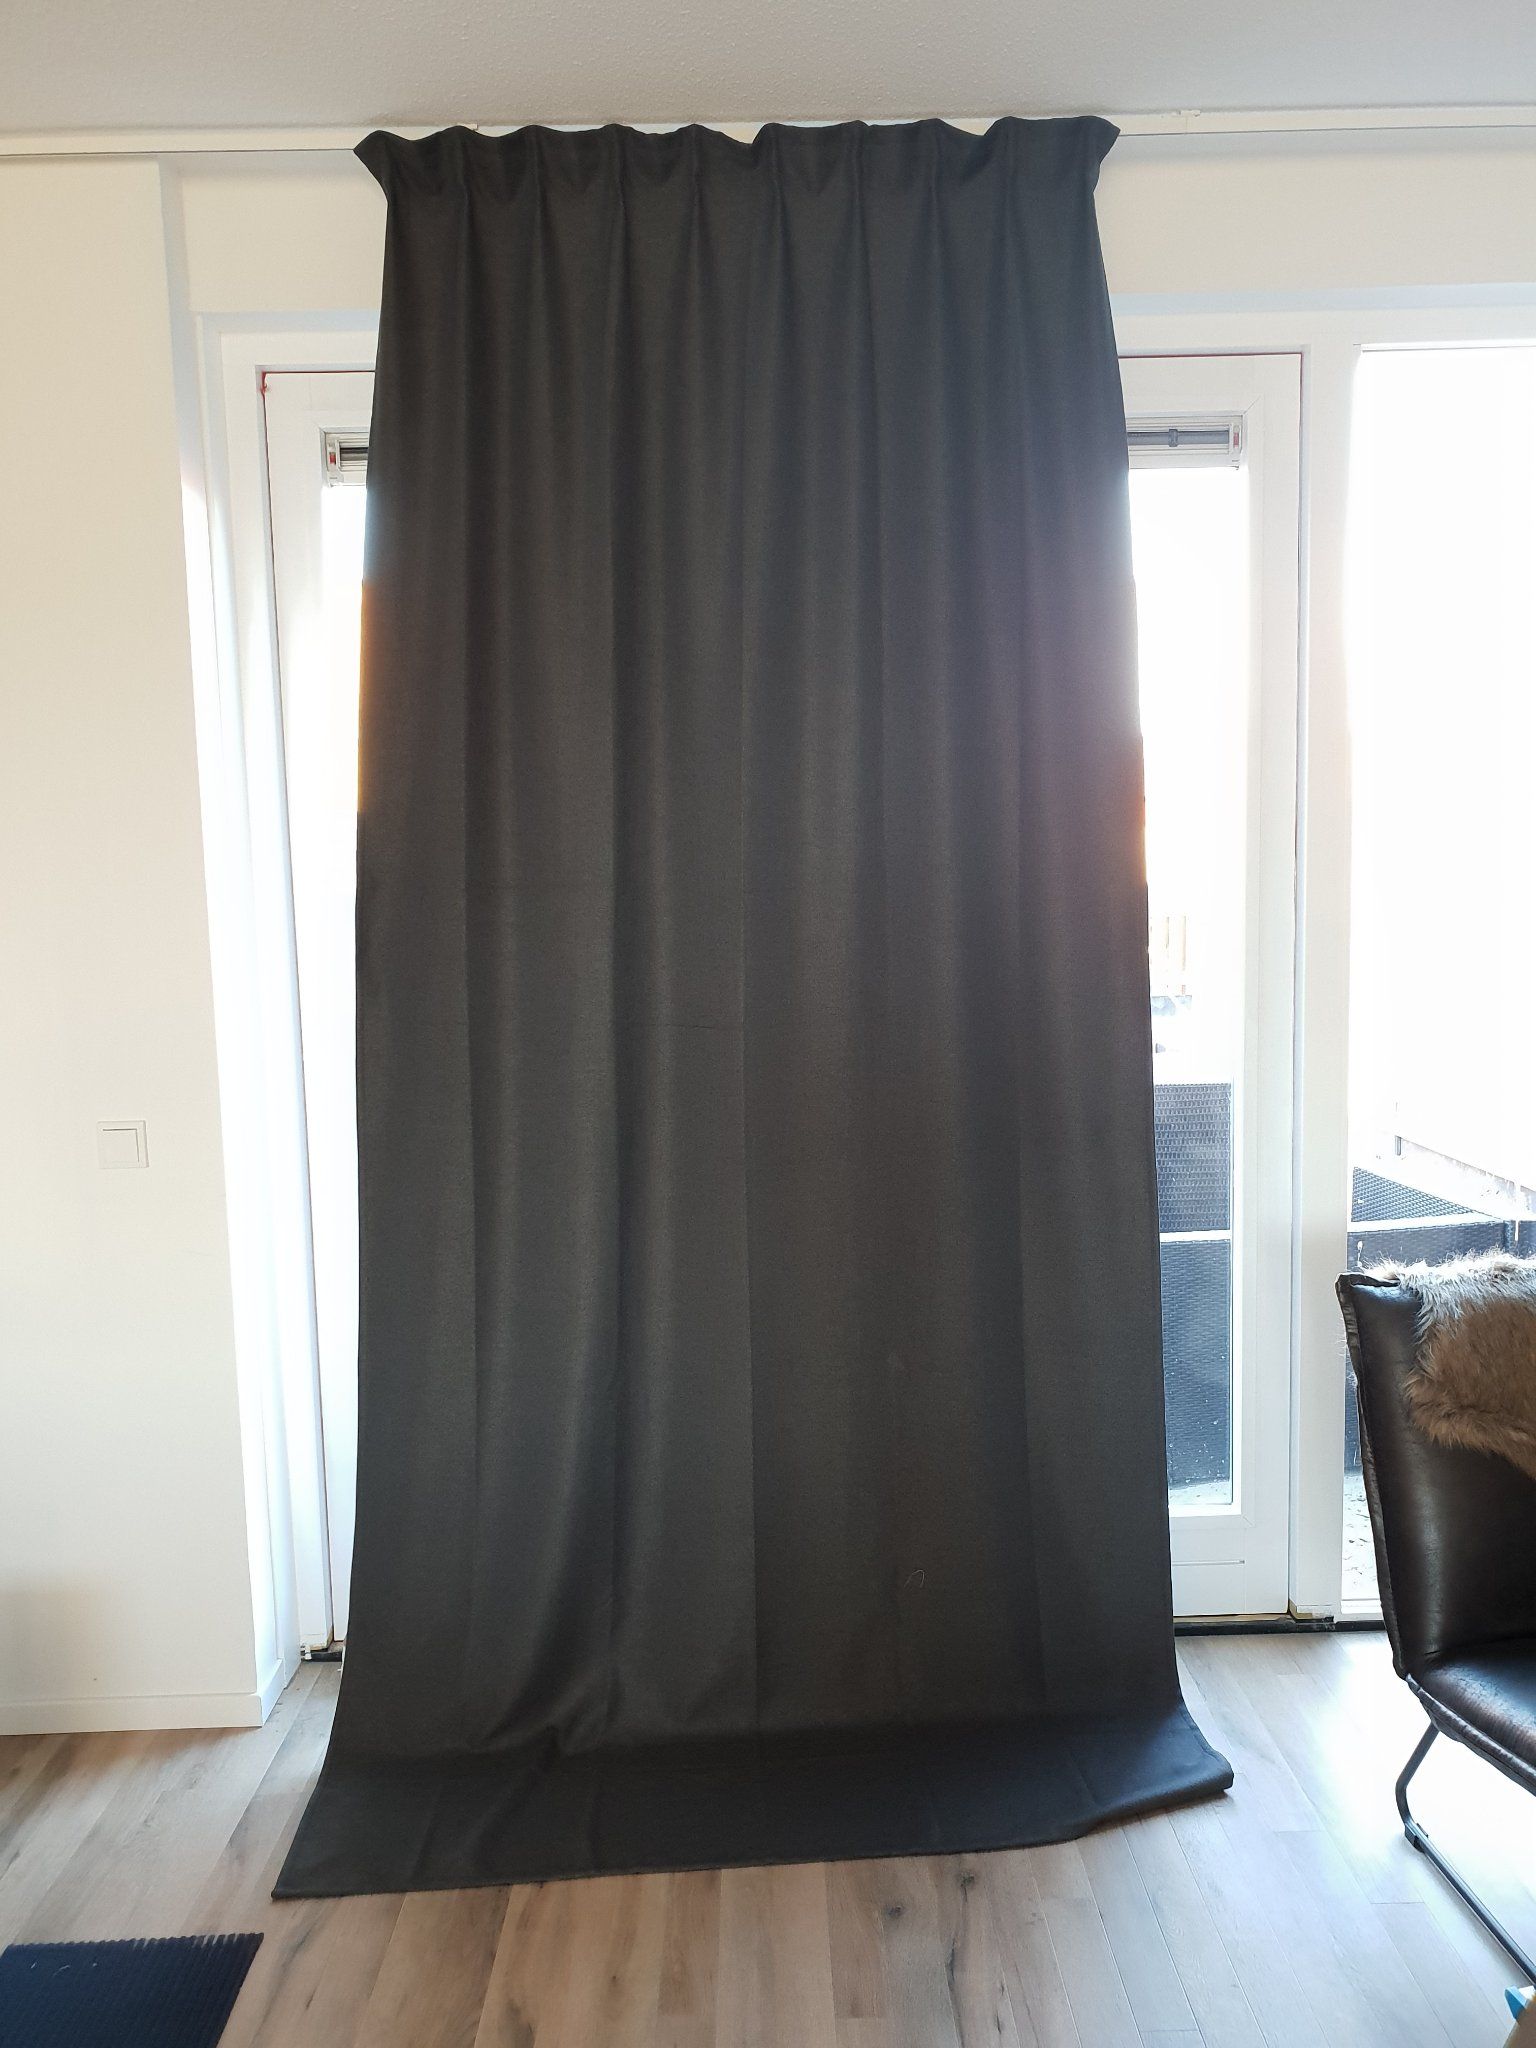 Transparant tiener Raak verstrikt Ikea gordijnen inkorten - Werkspot